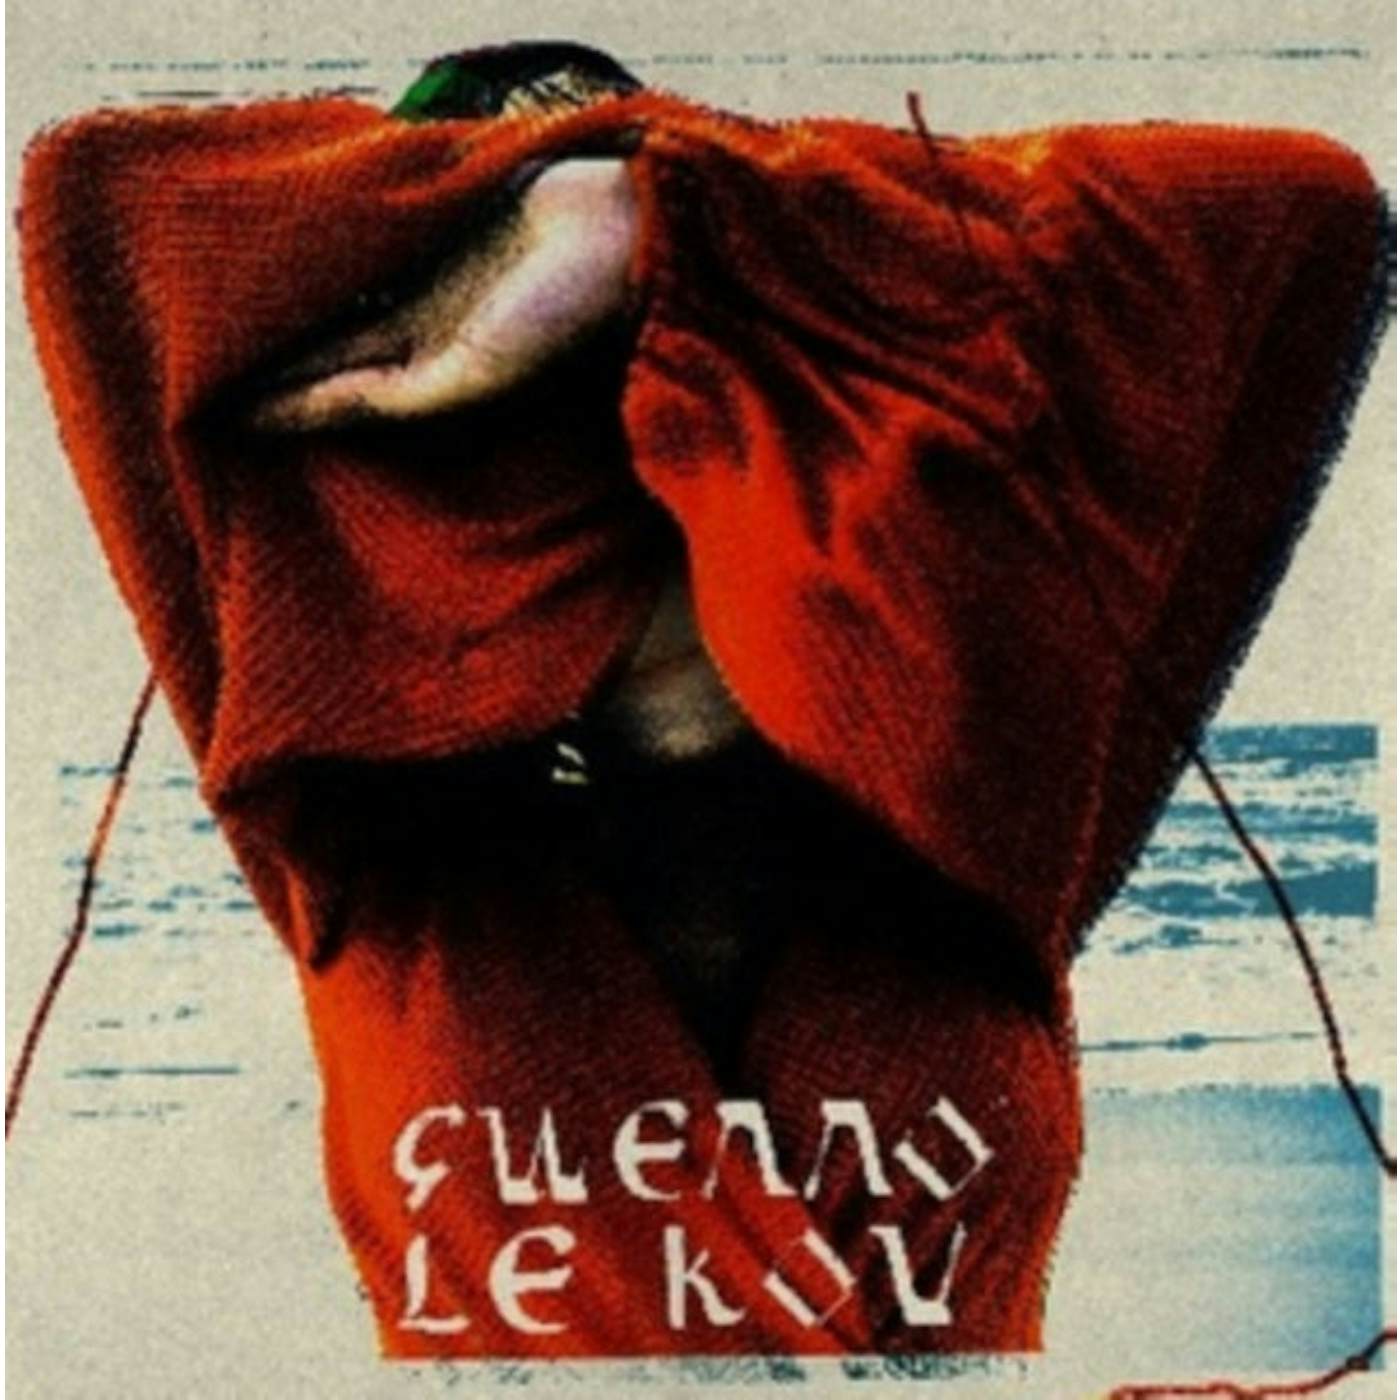 Gwenno LP - Le Kov (Vinyl)